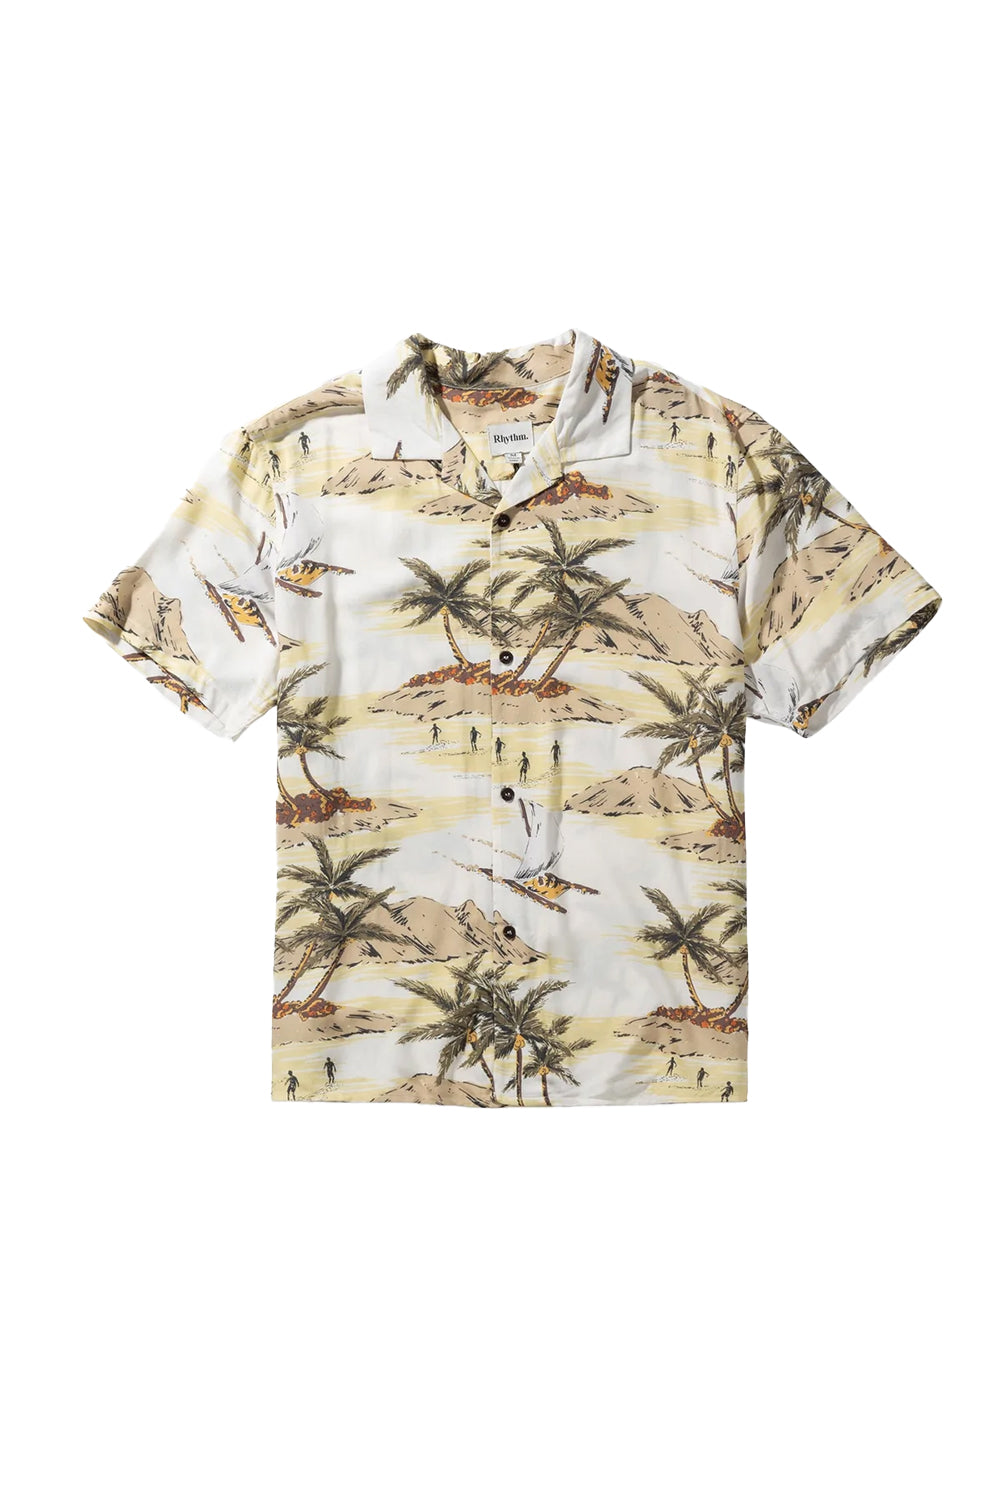 Rhythm Mens Tropic Short Sleeve Shirt